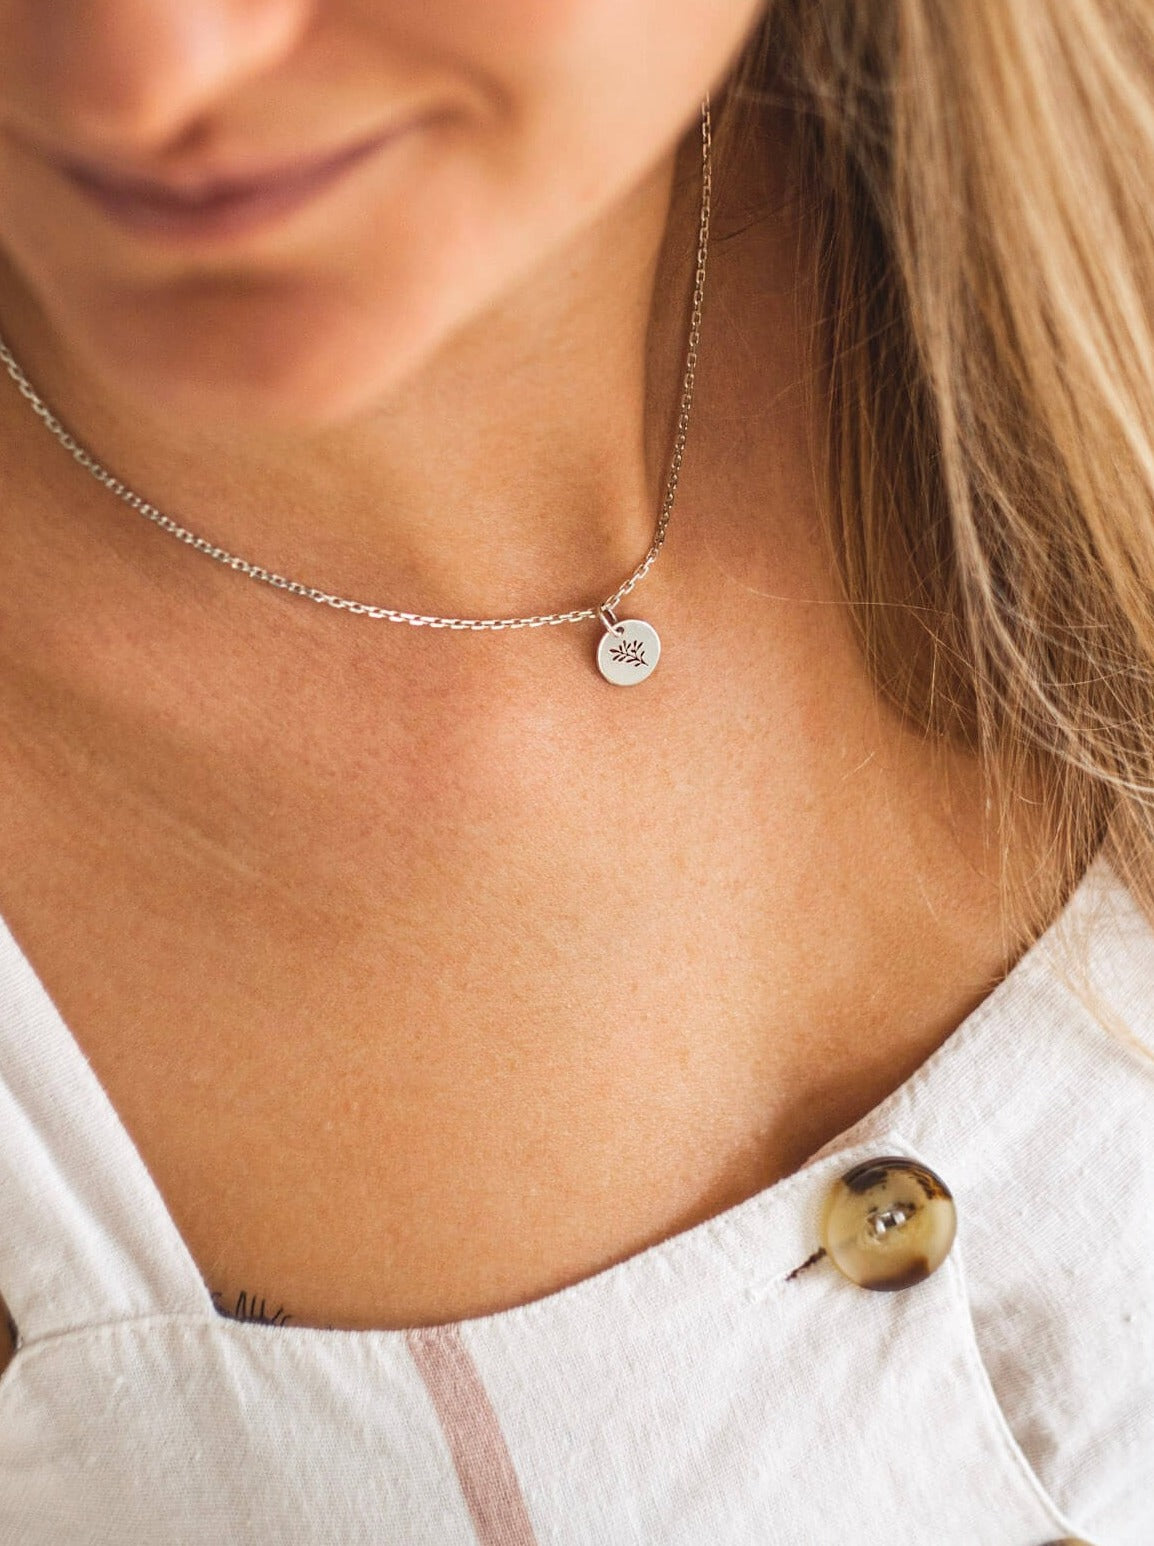 Srebrny naszyjnik - celebrytka na kobiecej szyi. Na łańcuszku widoczna okrągła zawieszka z wyciętym wzorem roślinnym - gałązką oliwną.